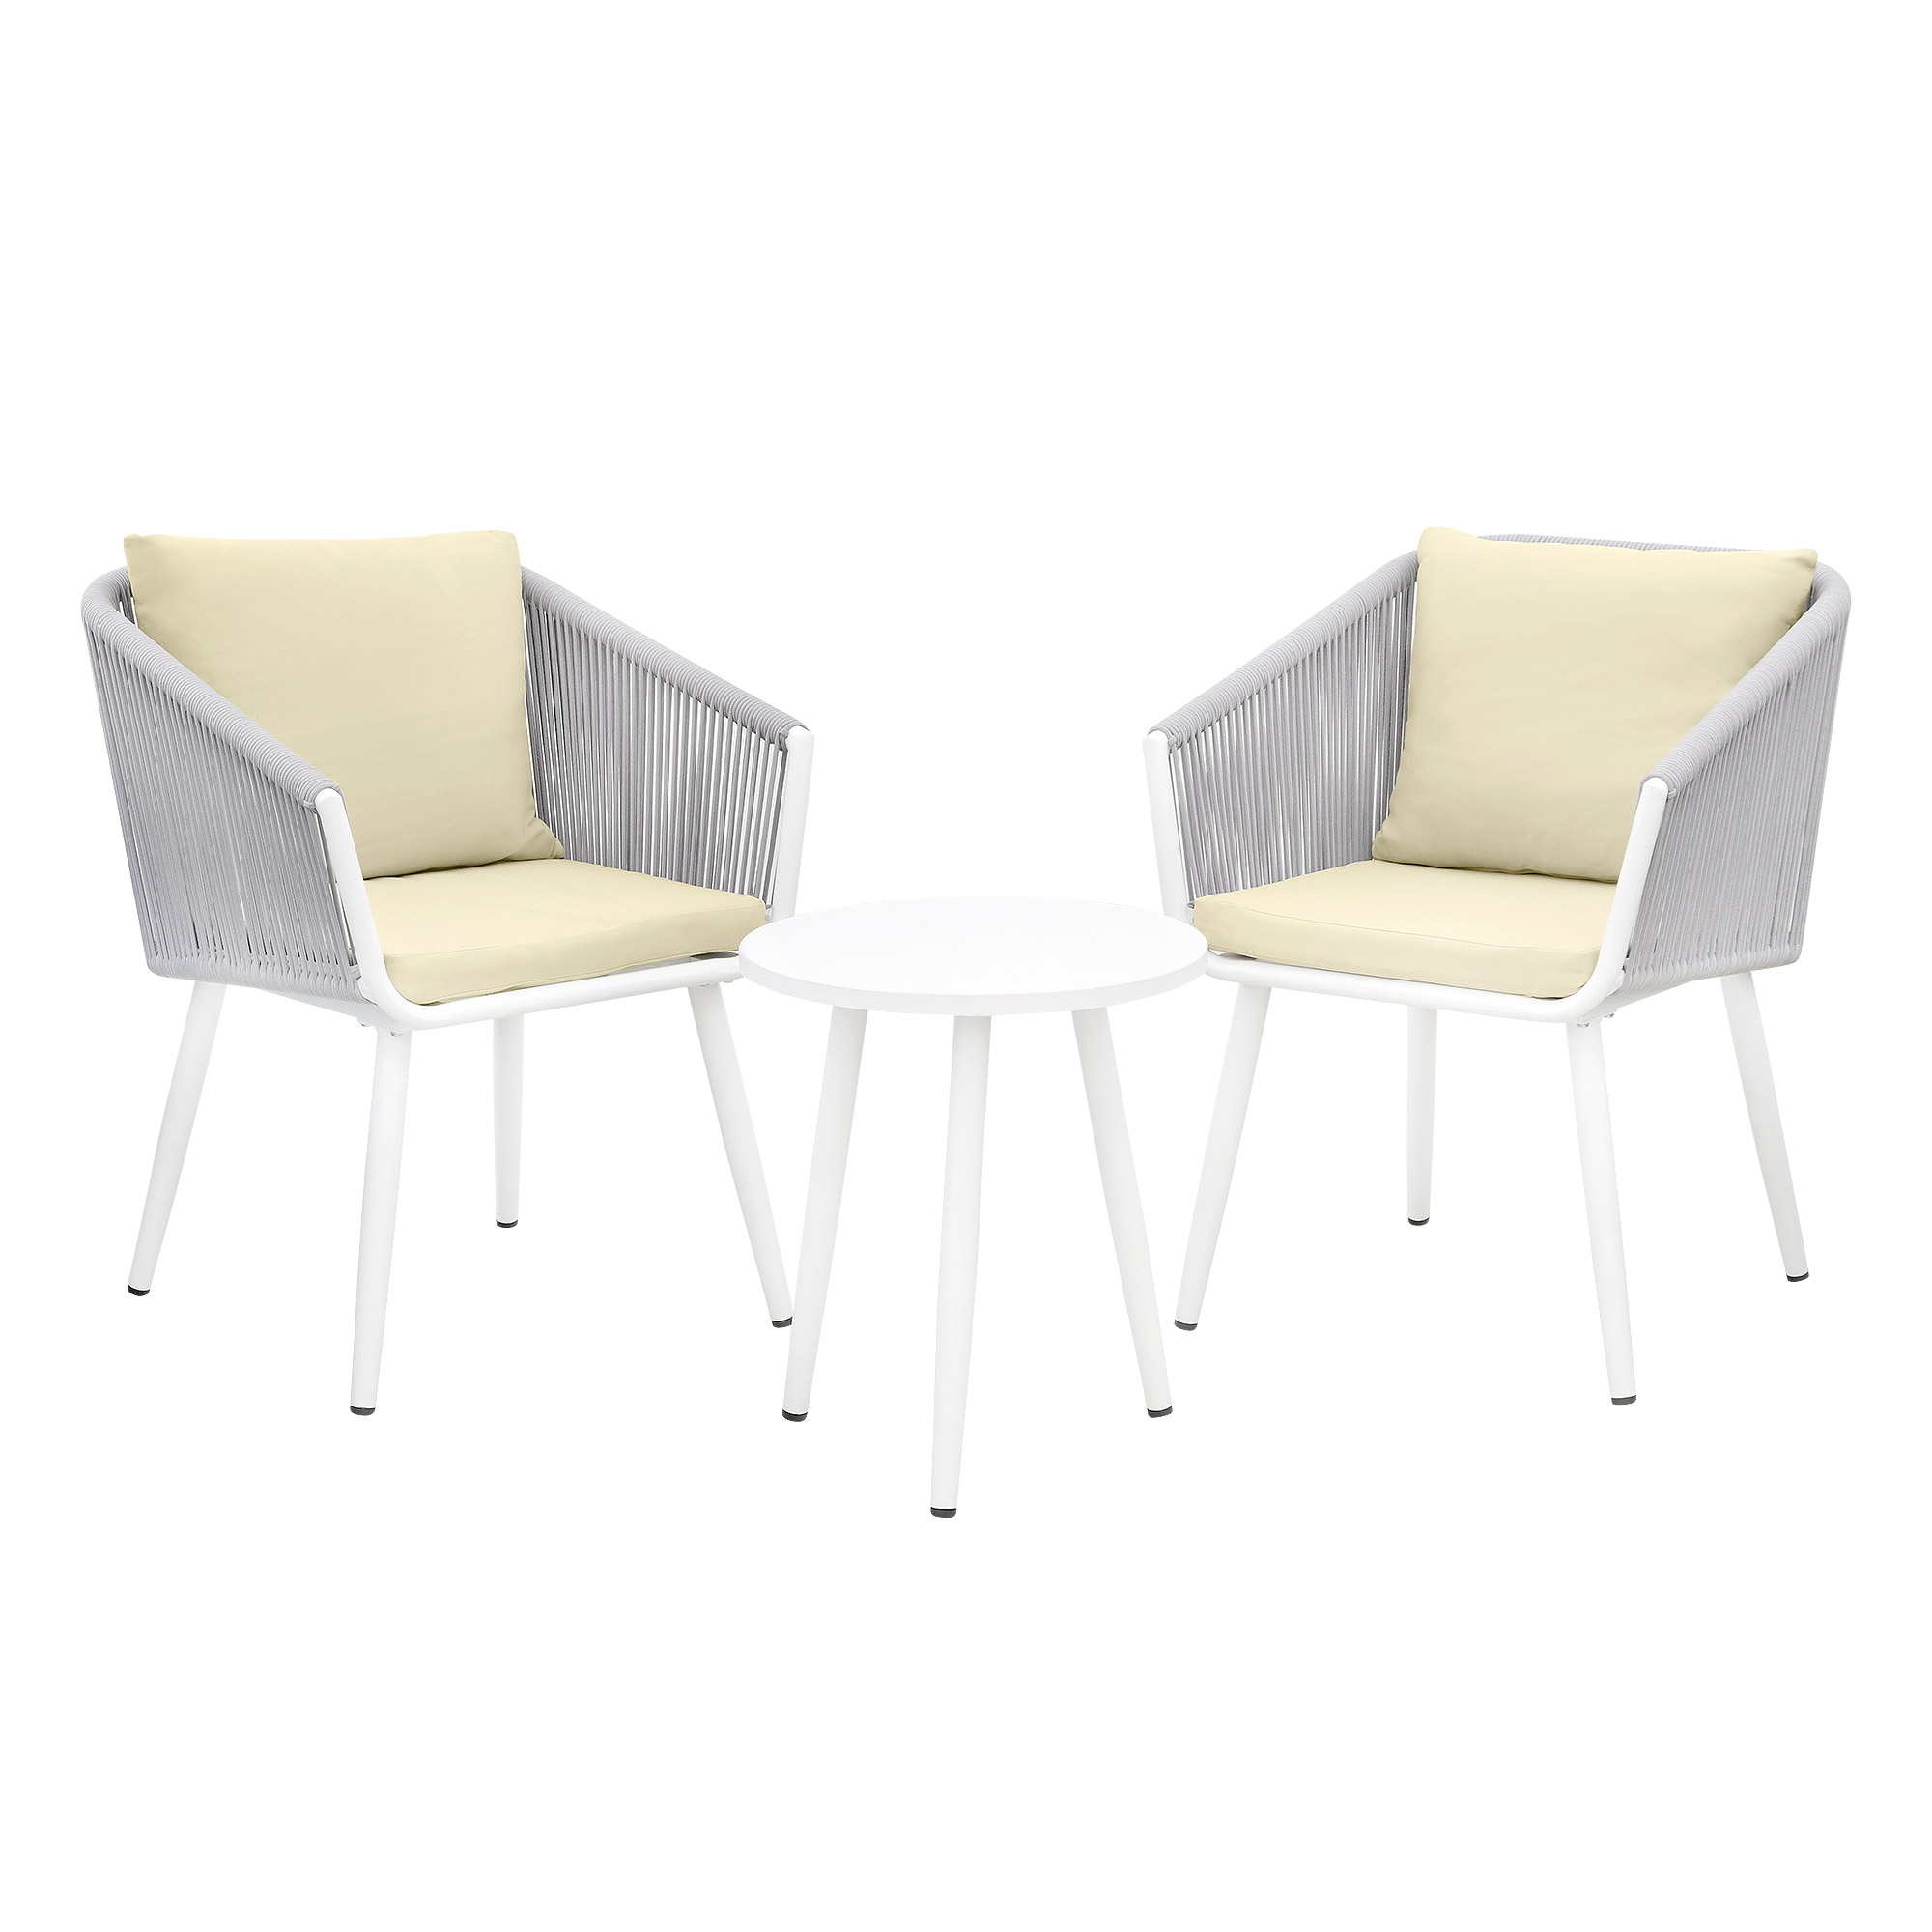 Комплект мебели Obt light 2 кресла+столик, цвет белый, размер 59х64х78 см - фото 1